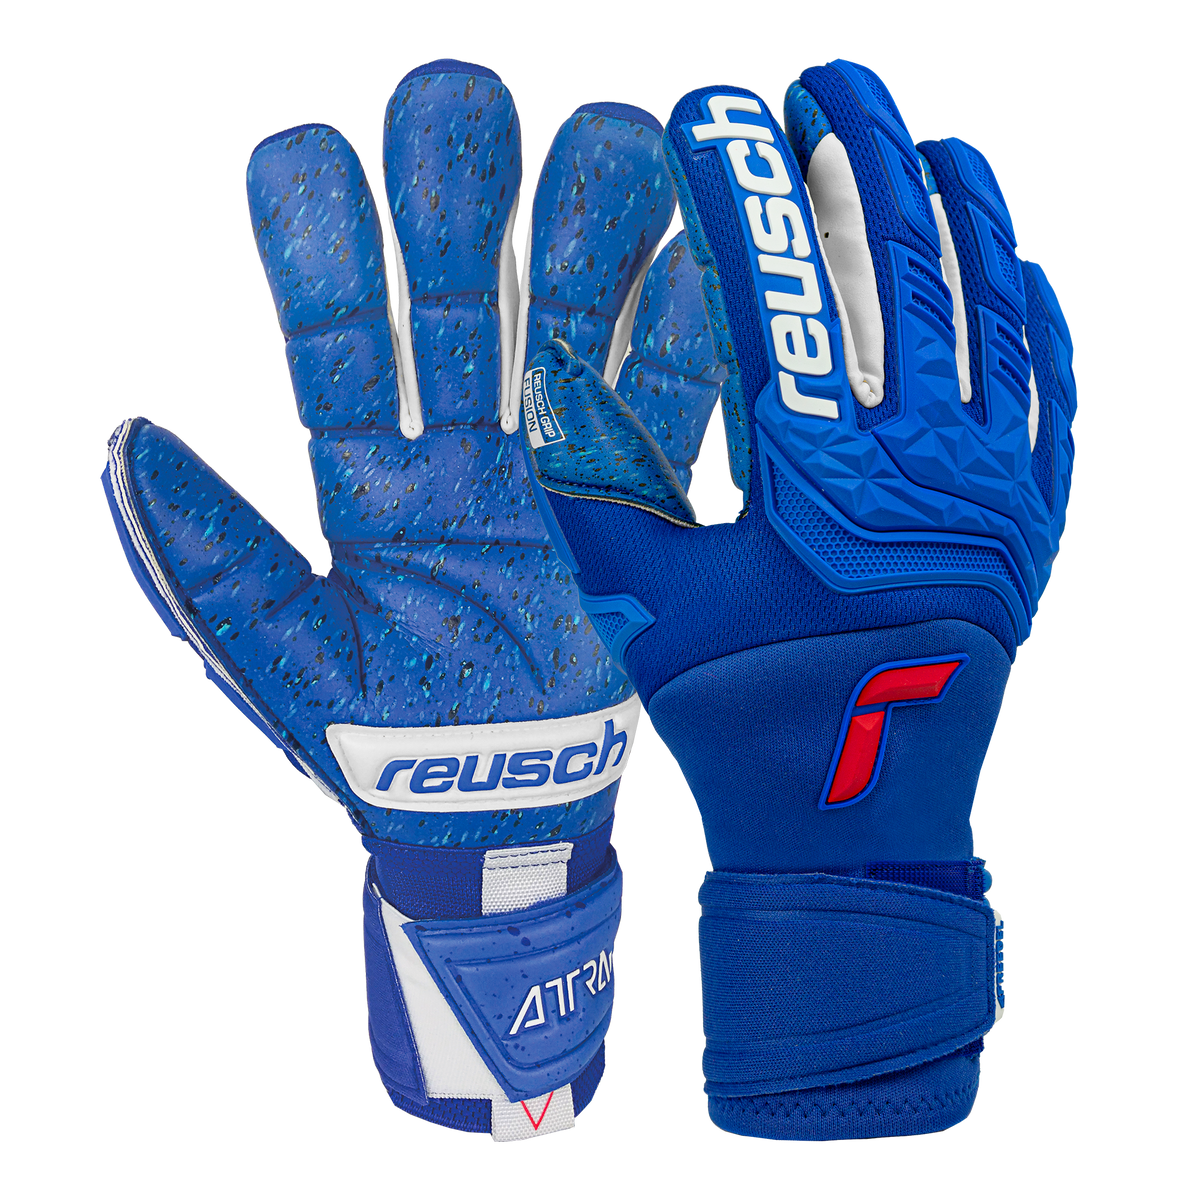 Reusch Attrakt Freegel Goaliator – Goalkeeper Fusion Zone 5170995 Soccer Blue Gloves